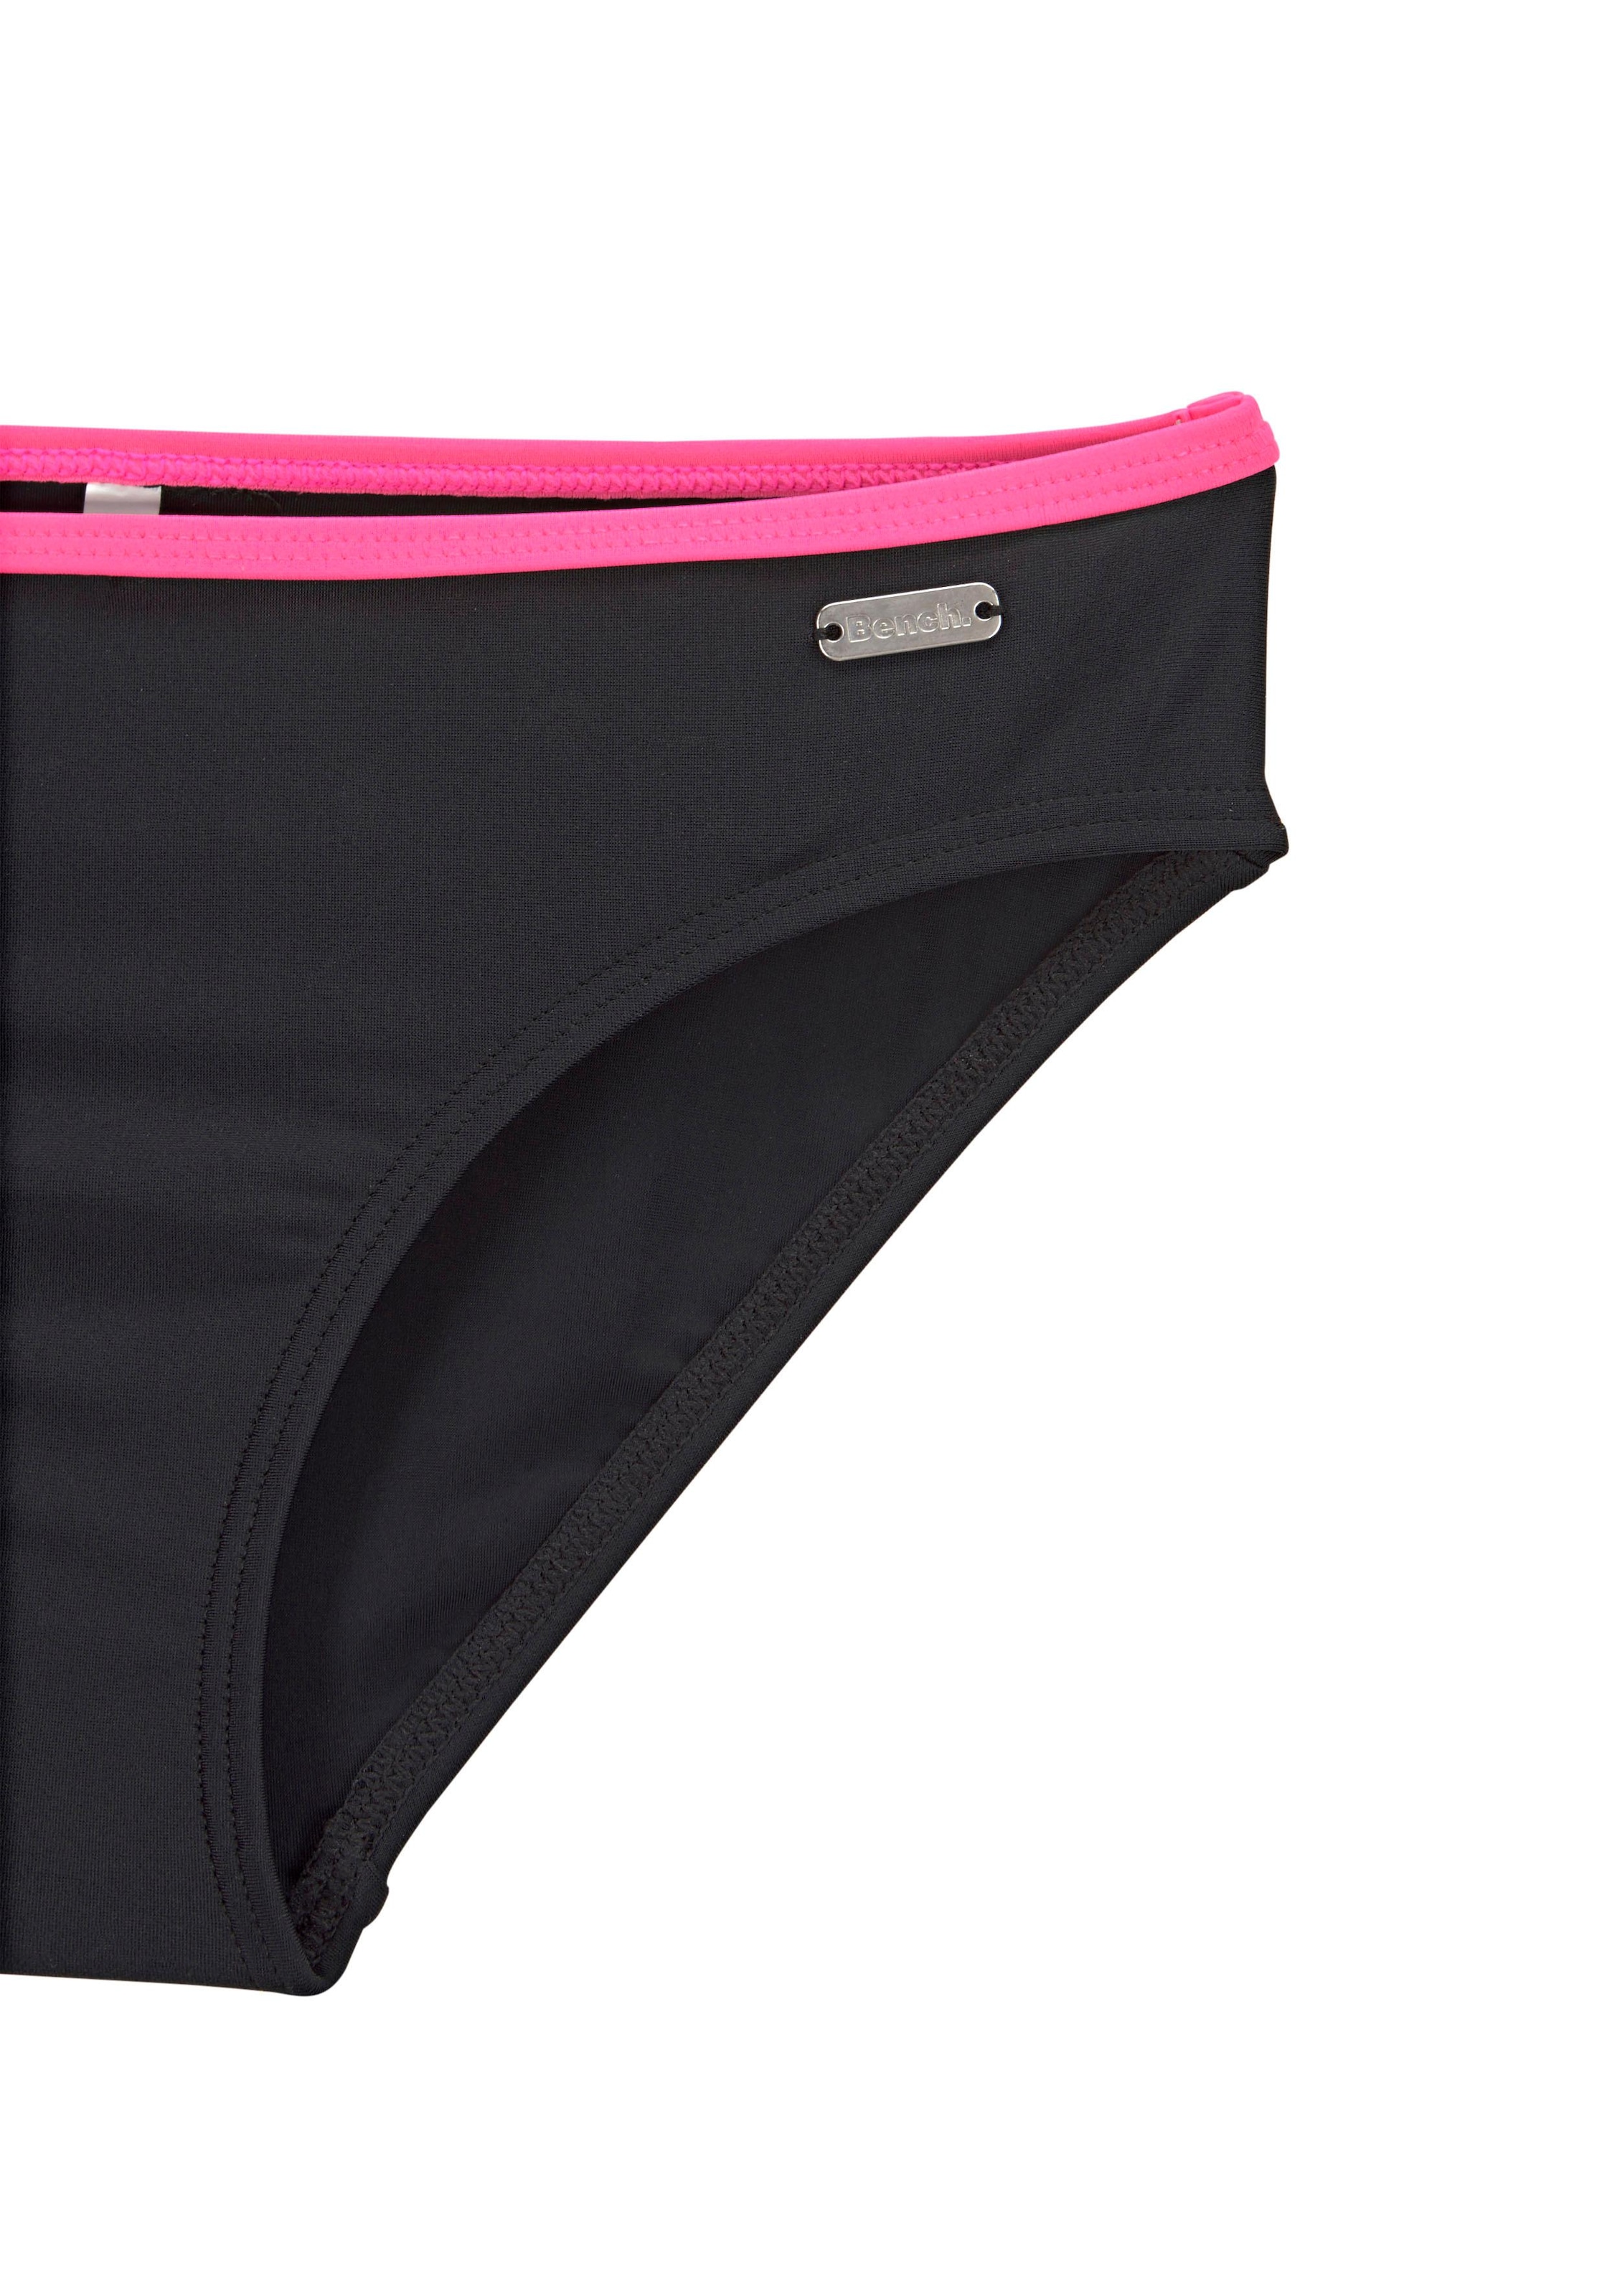 Bustier-Bikini, | BAUR kaufen Bench. pinken mit Kontrastpaspeln